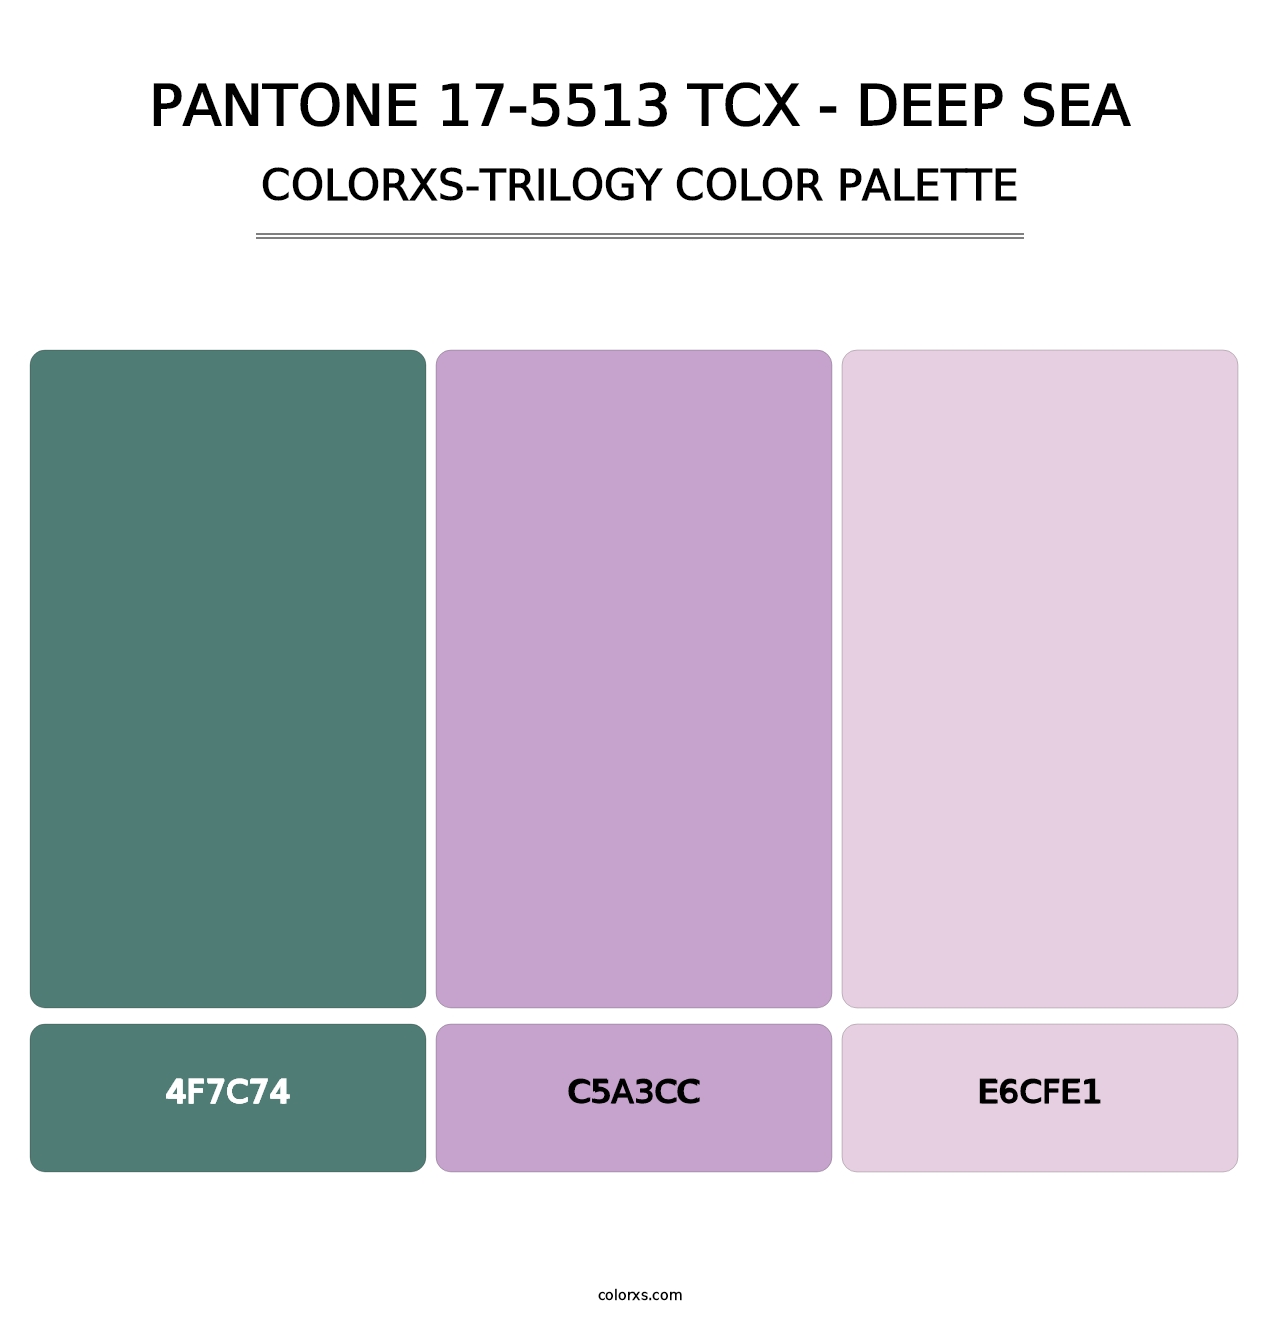 PANTONE 17-5513 TCX - Deep Sea - Colorxs Trilogy Palette